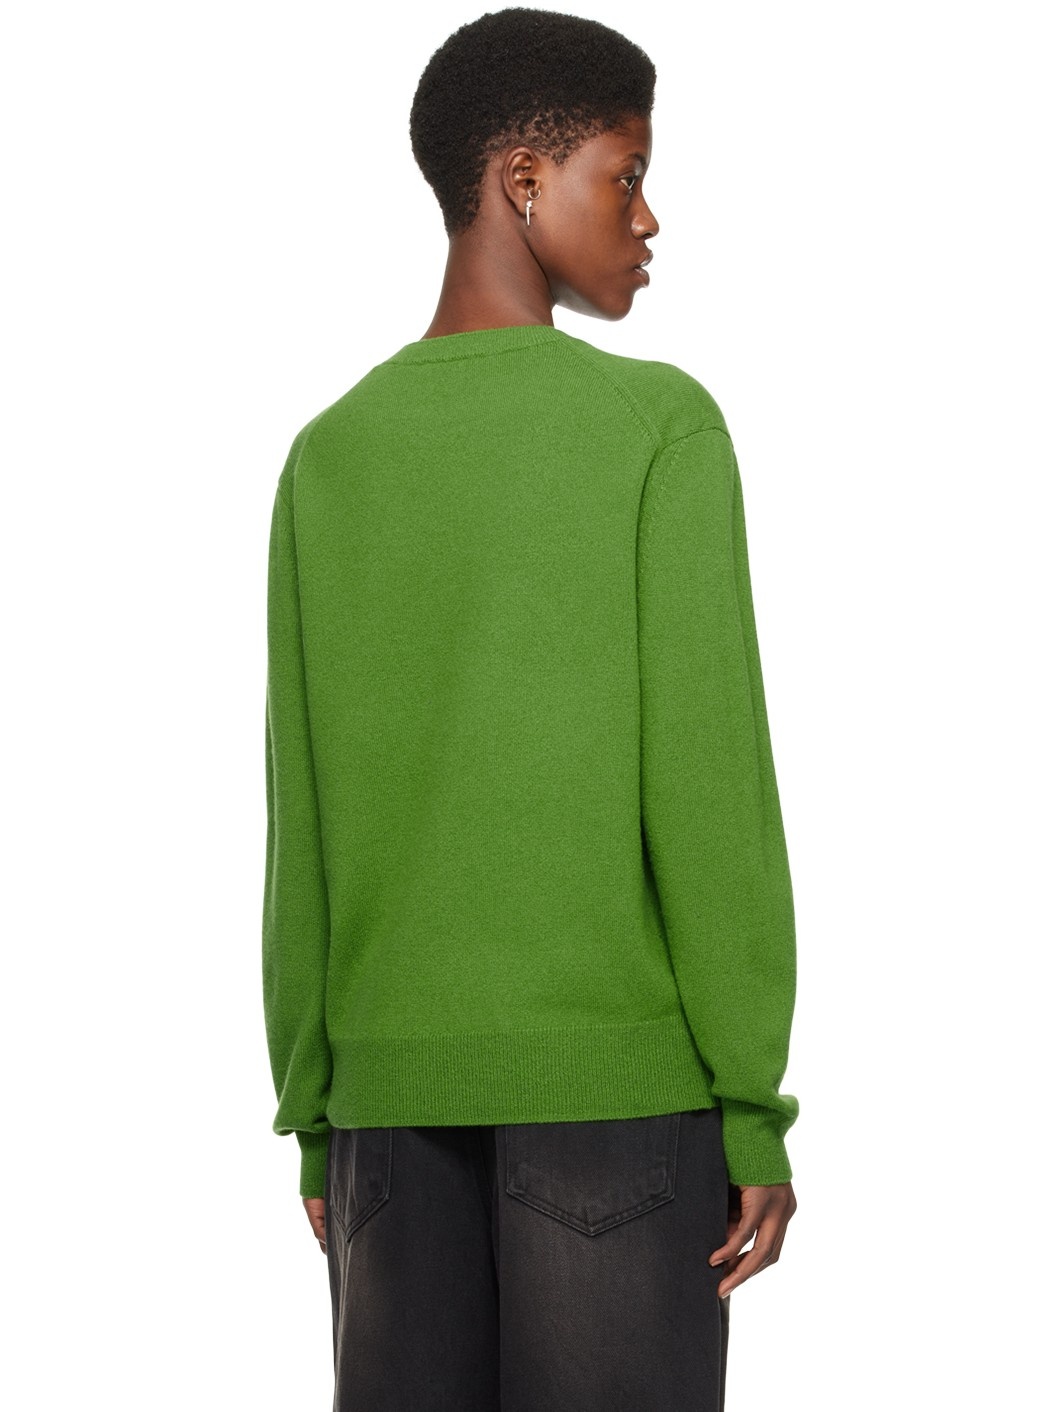 Green Jacquard Sweater - 3